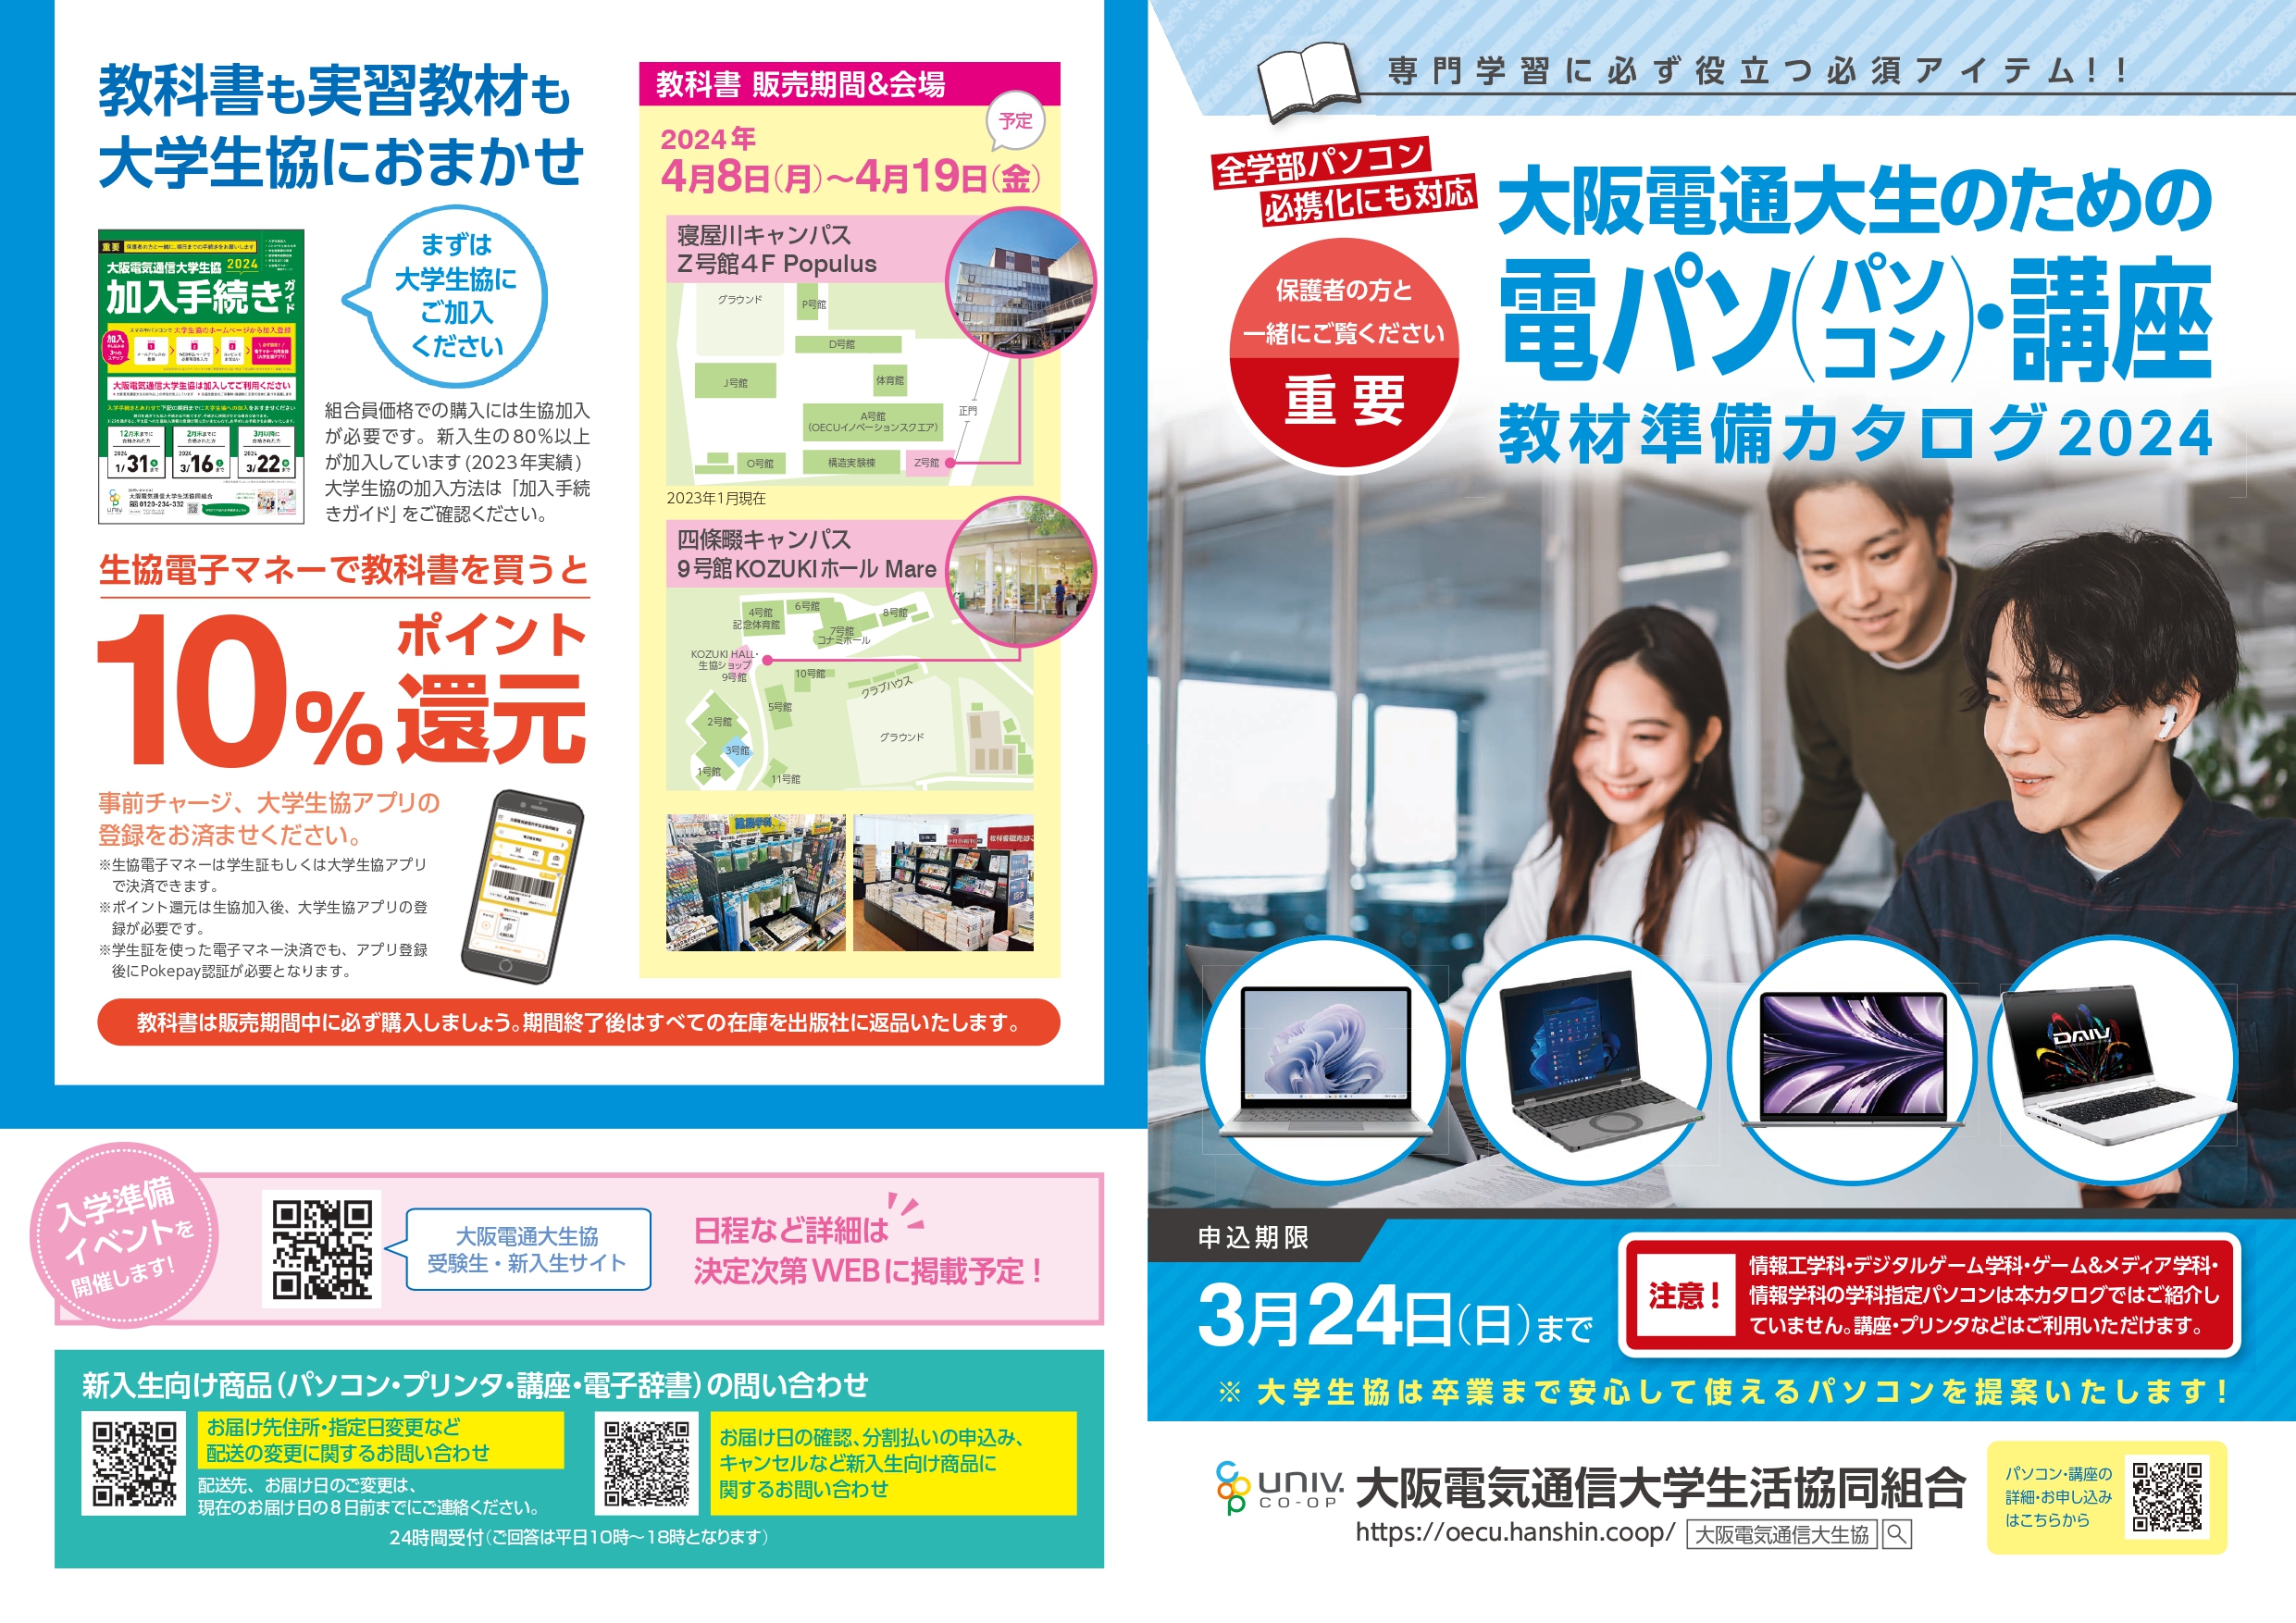 大阪電気通信大生のためのオリジナル教材パソコン